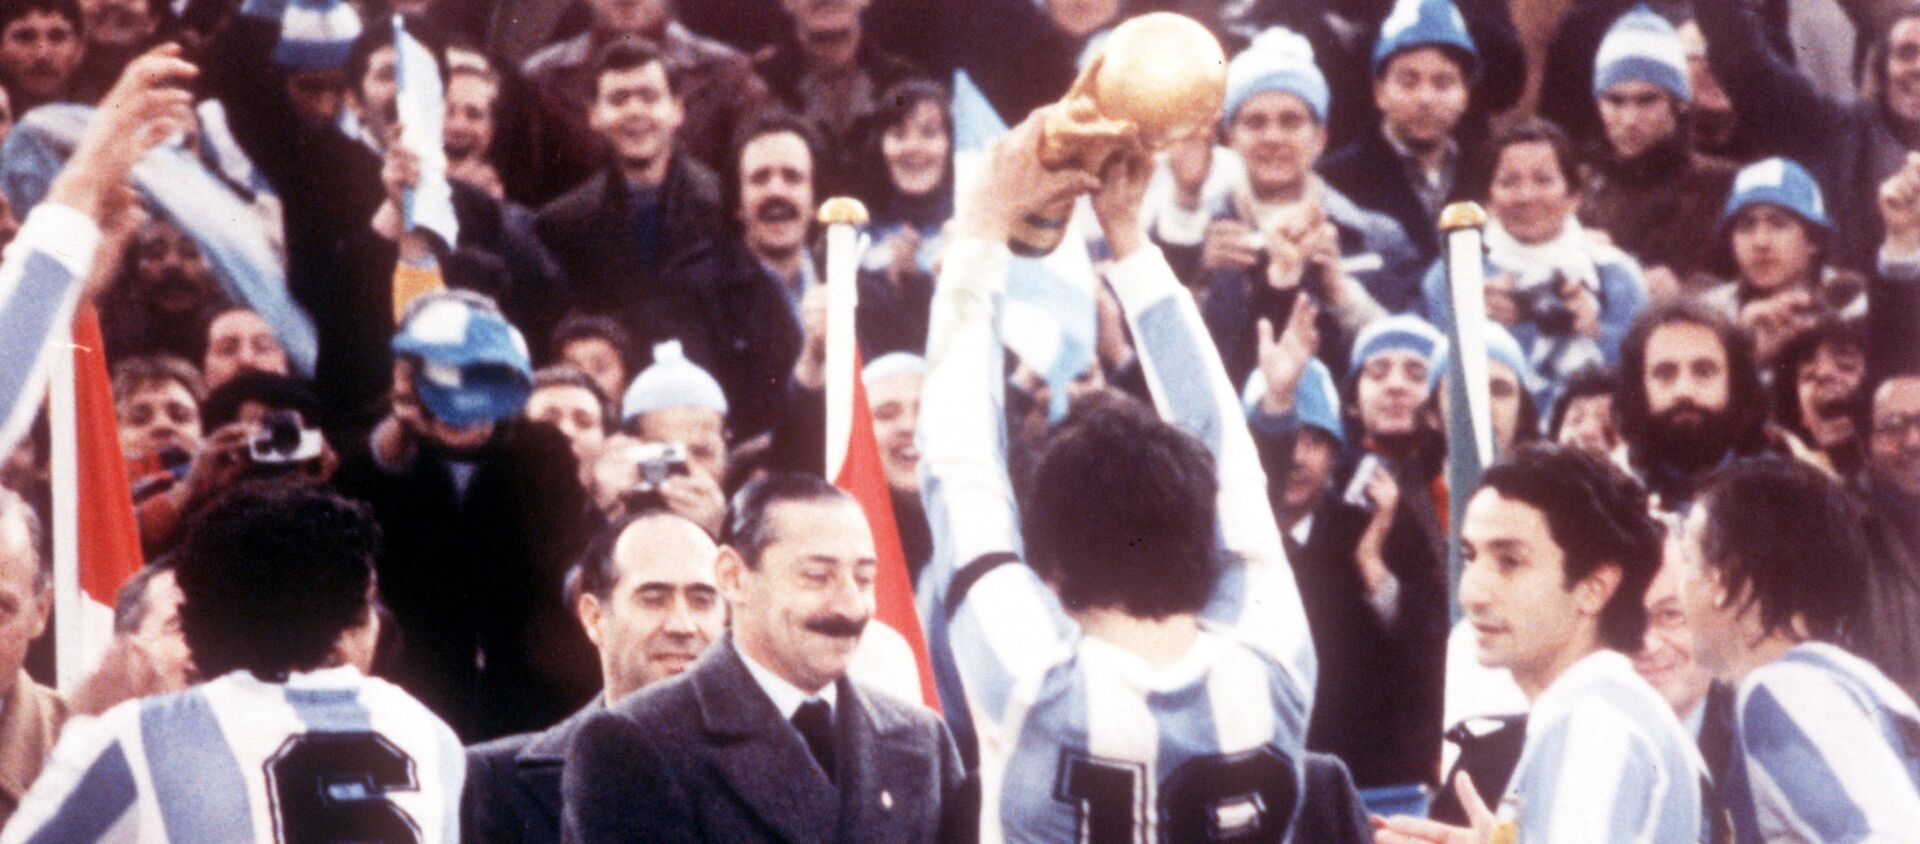 La selección argentina de fútbol celebra el campeonato mundial en 1978 frente al dictador Jorge Rafael Videla - Sputnik Mundo, 1920, 25.06.2019